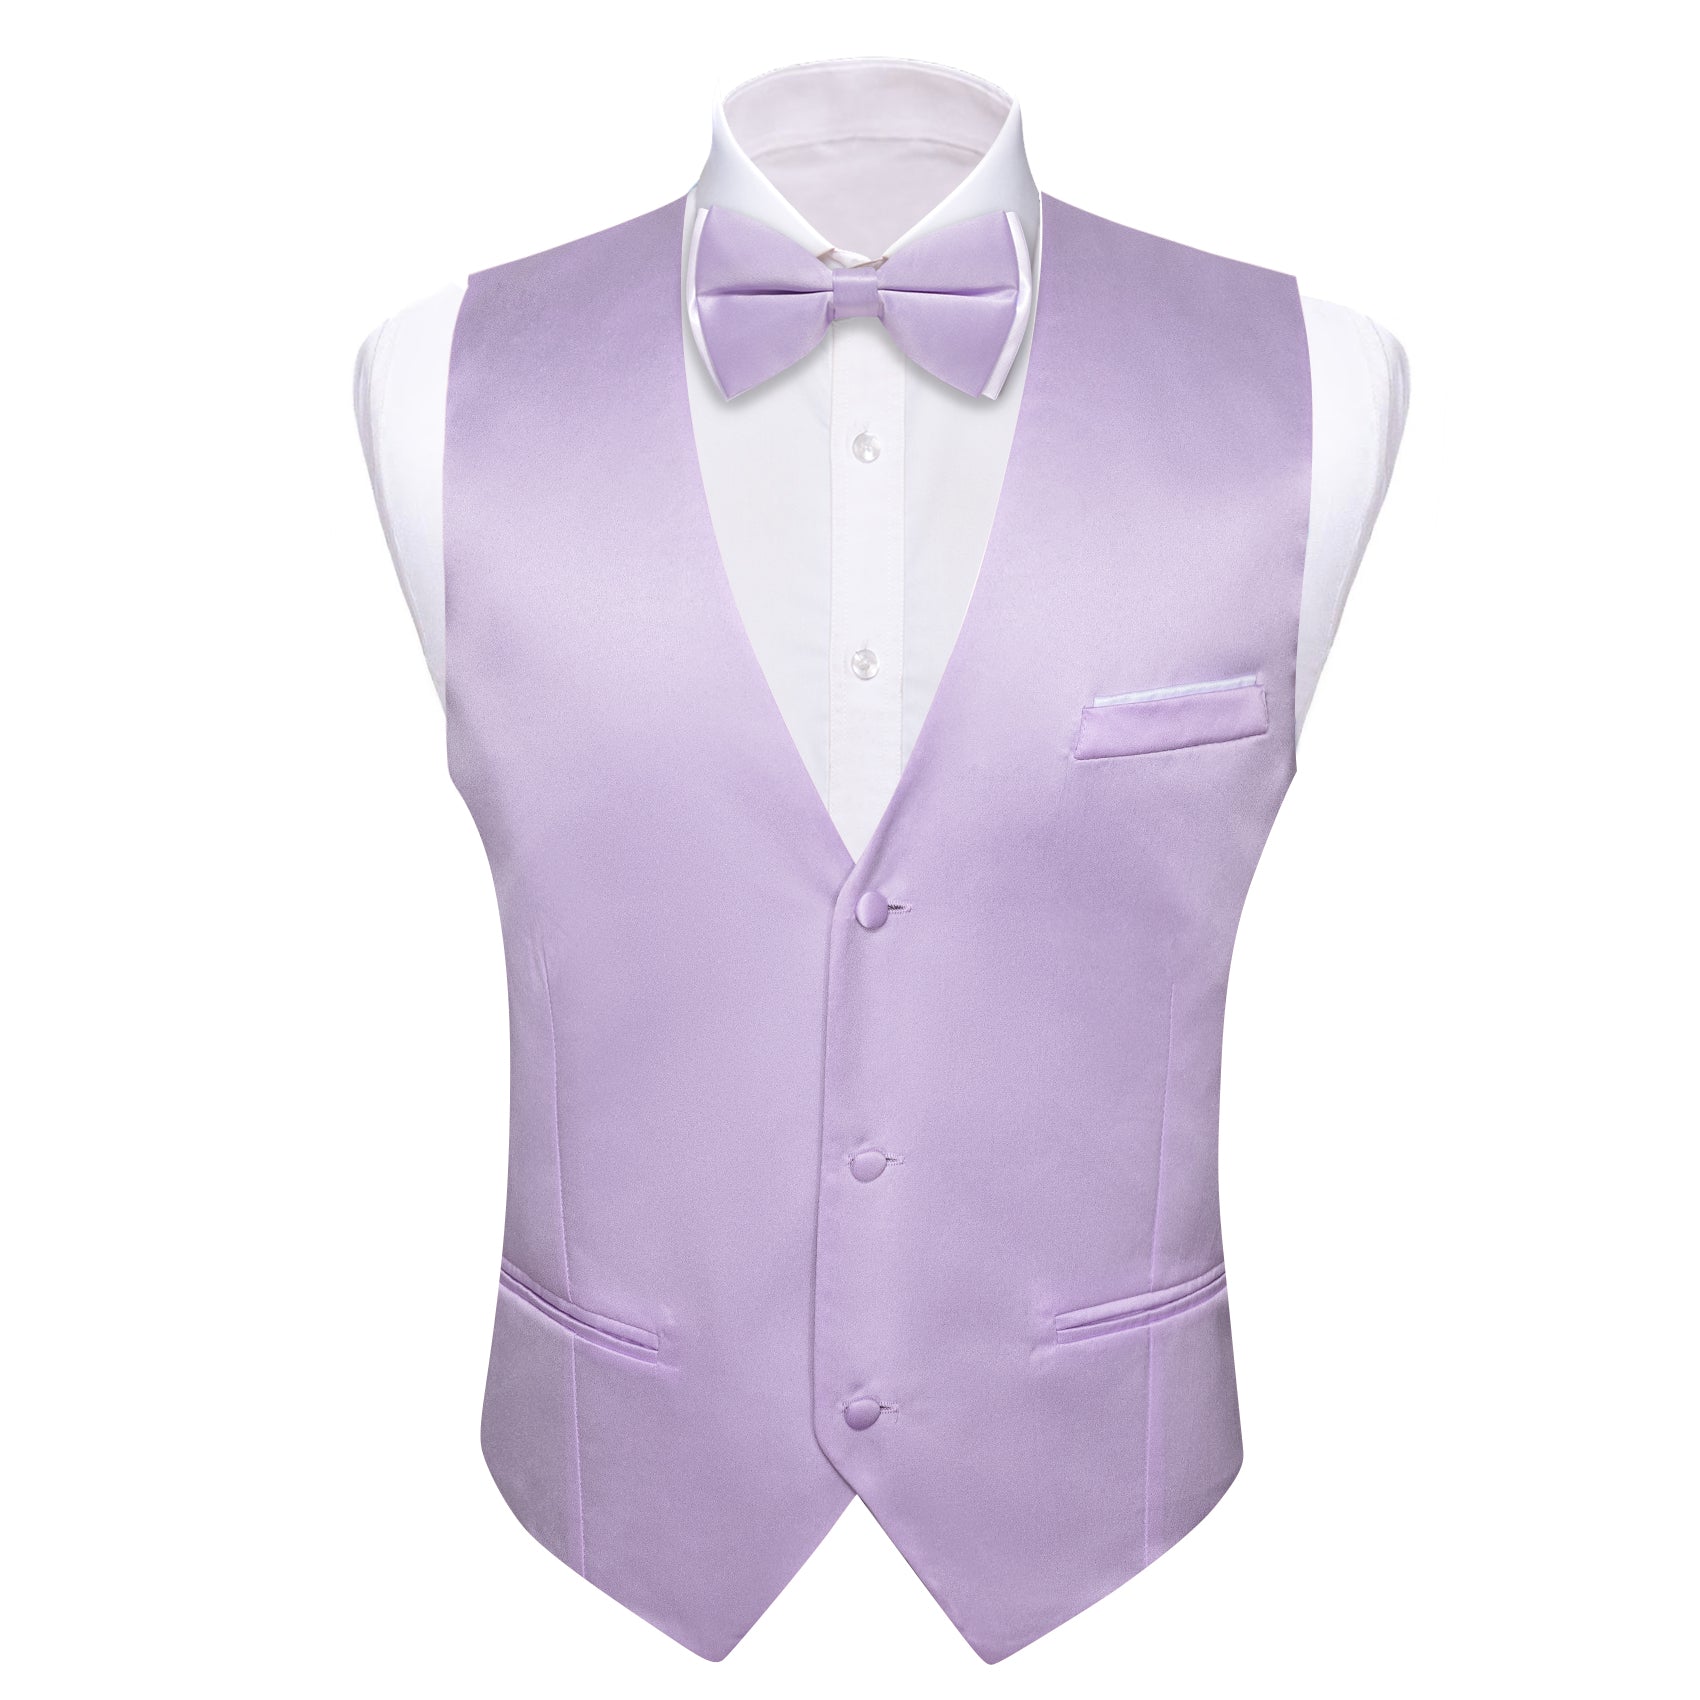 Light Purple white bowtie and mens vest suit